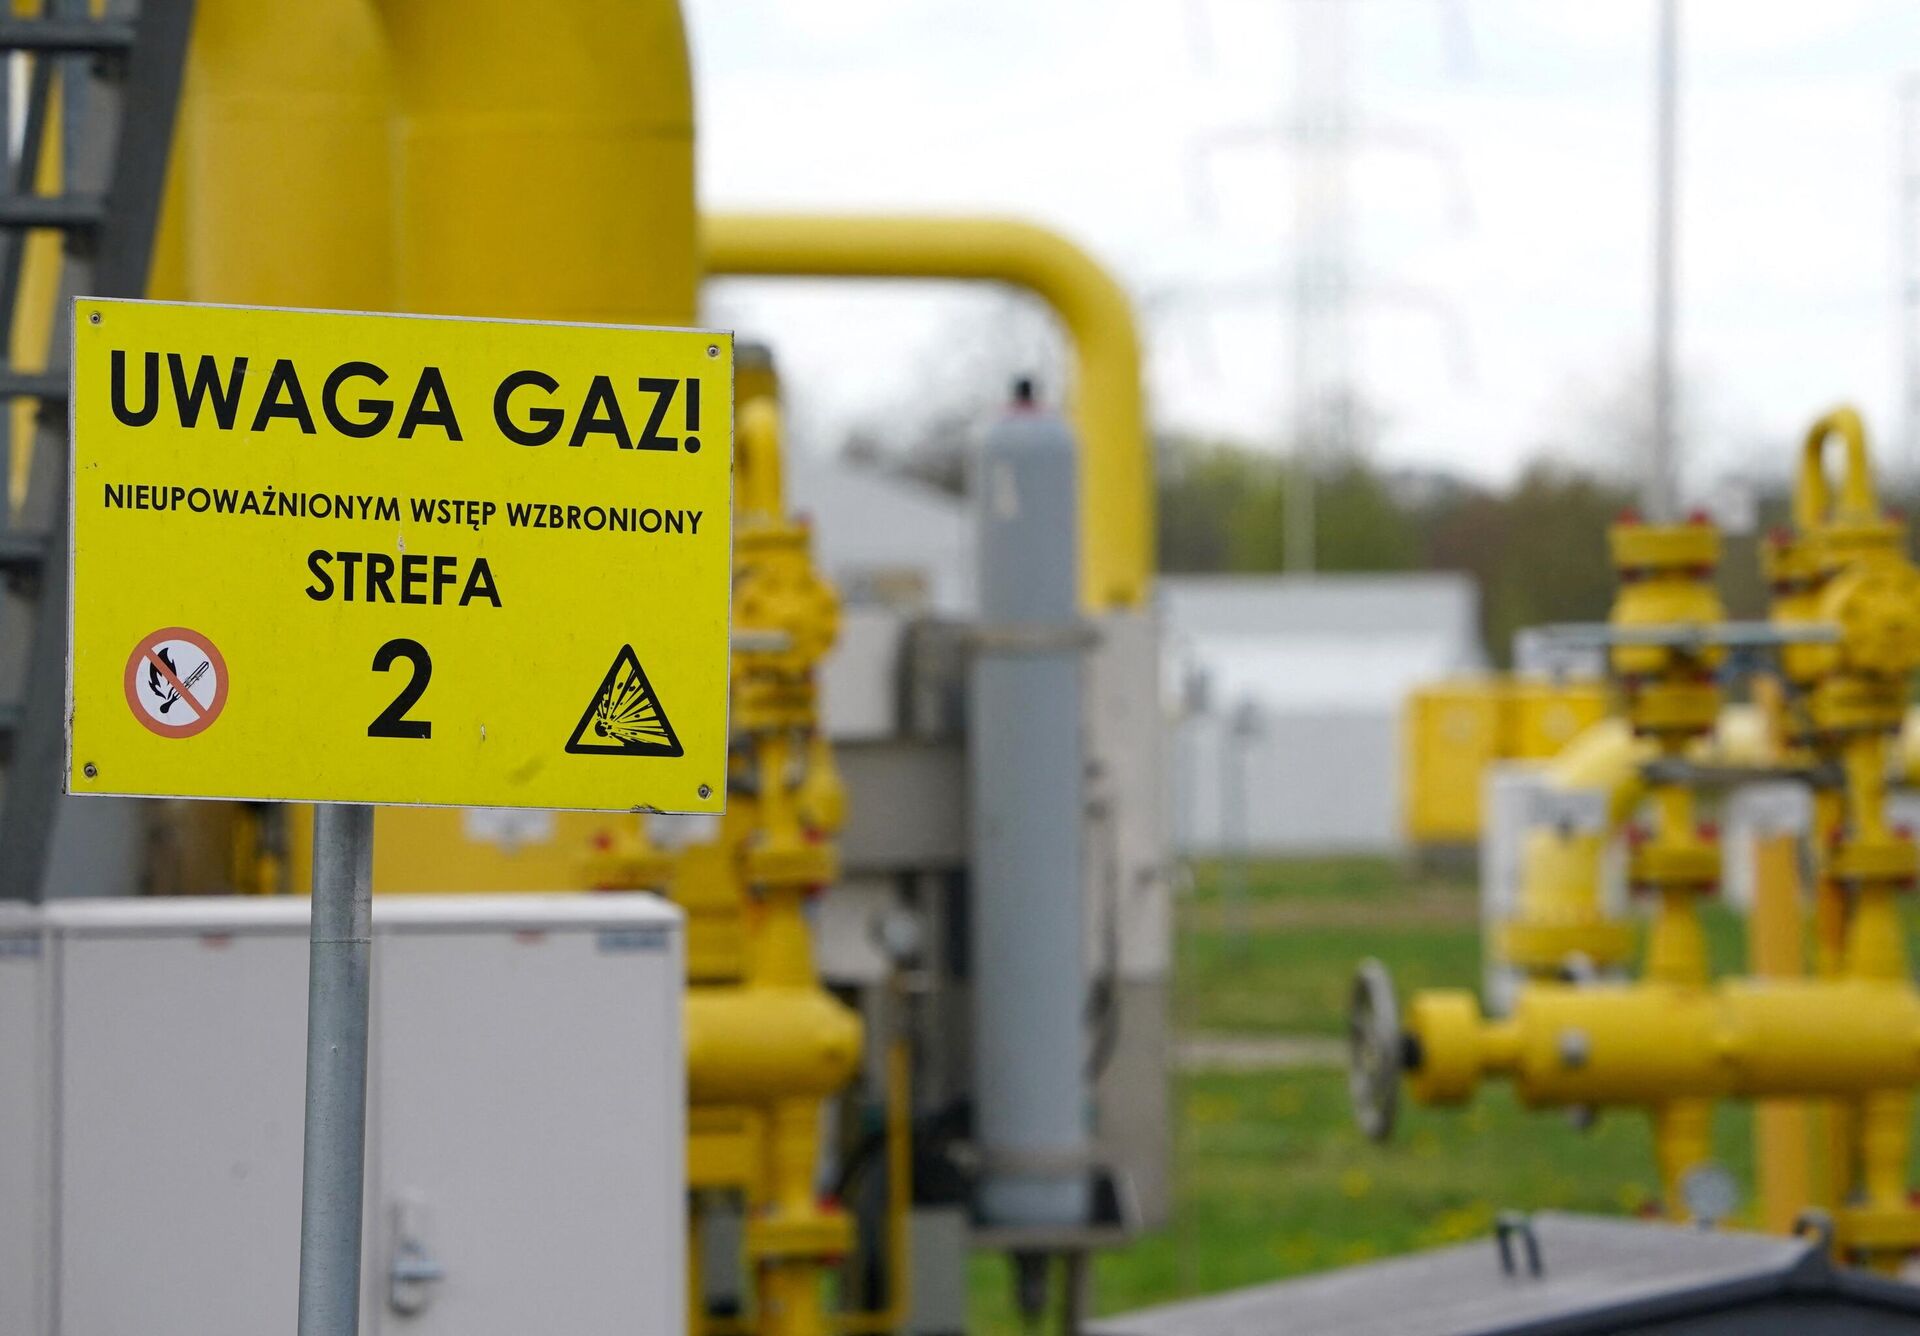 A inscrição em uma placa diz 'Uwaga gaz' (gás de atenção) no ponto de transmissão de gás em Rembelszczyzna, perto de Varsóvia, em 27 de abril de 2022. - Sputnik Brasil, 1920, 29.04.2022